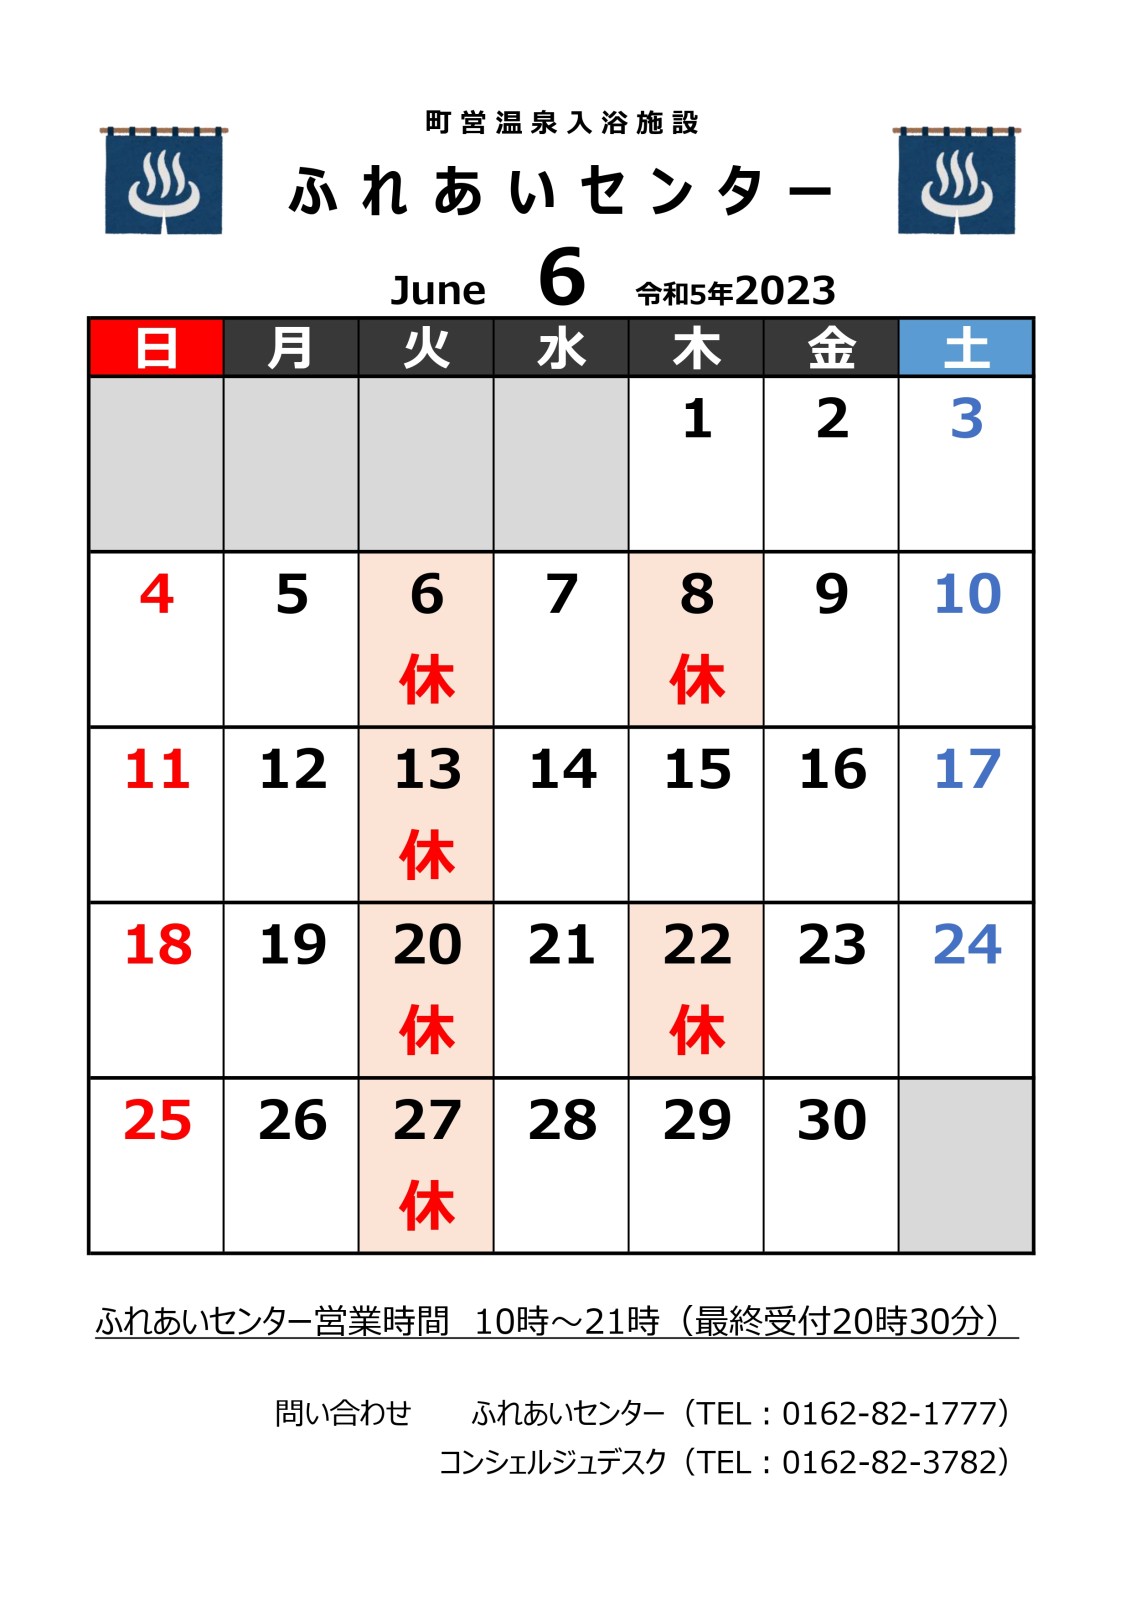 【ふれあいセンター】6月の営業について